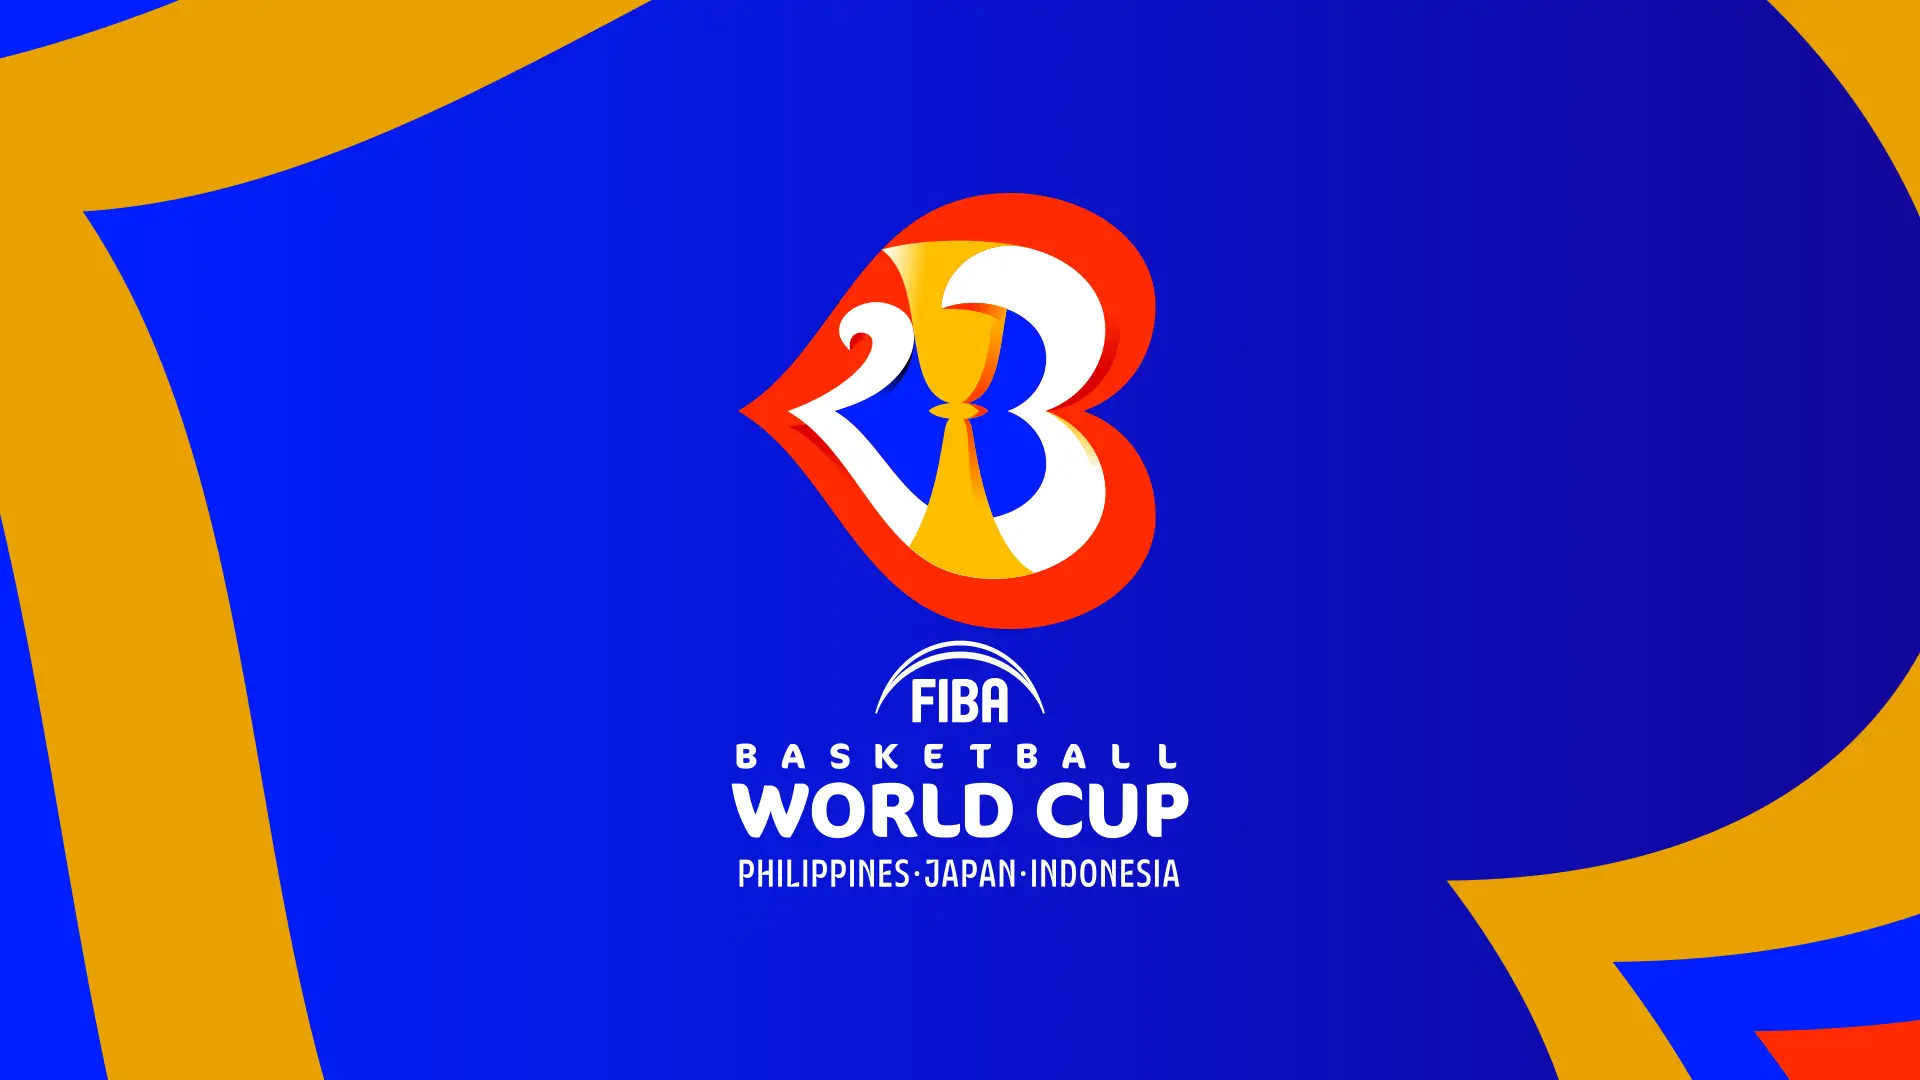 Logotipo de la Basketball World Cup o Mundial de baloncesto a disputarse en Filipinas, Japón e Indonesia